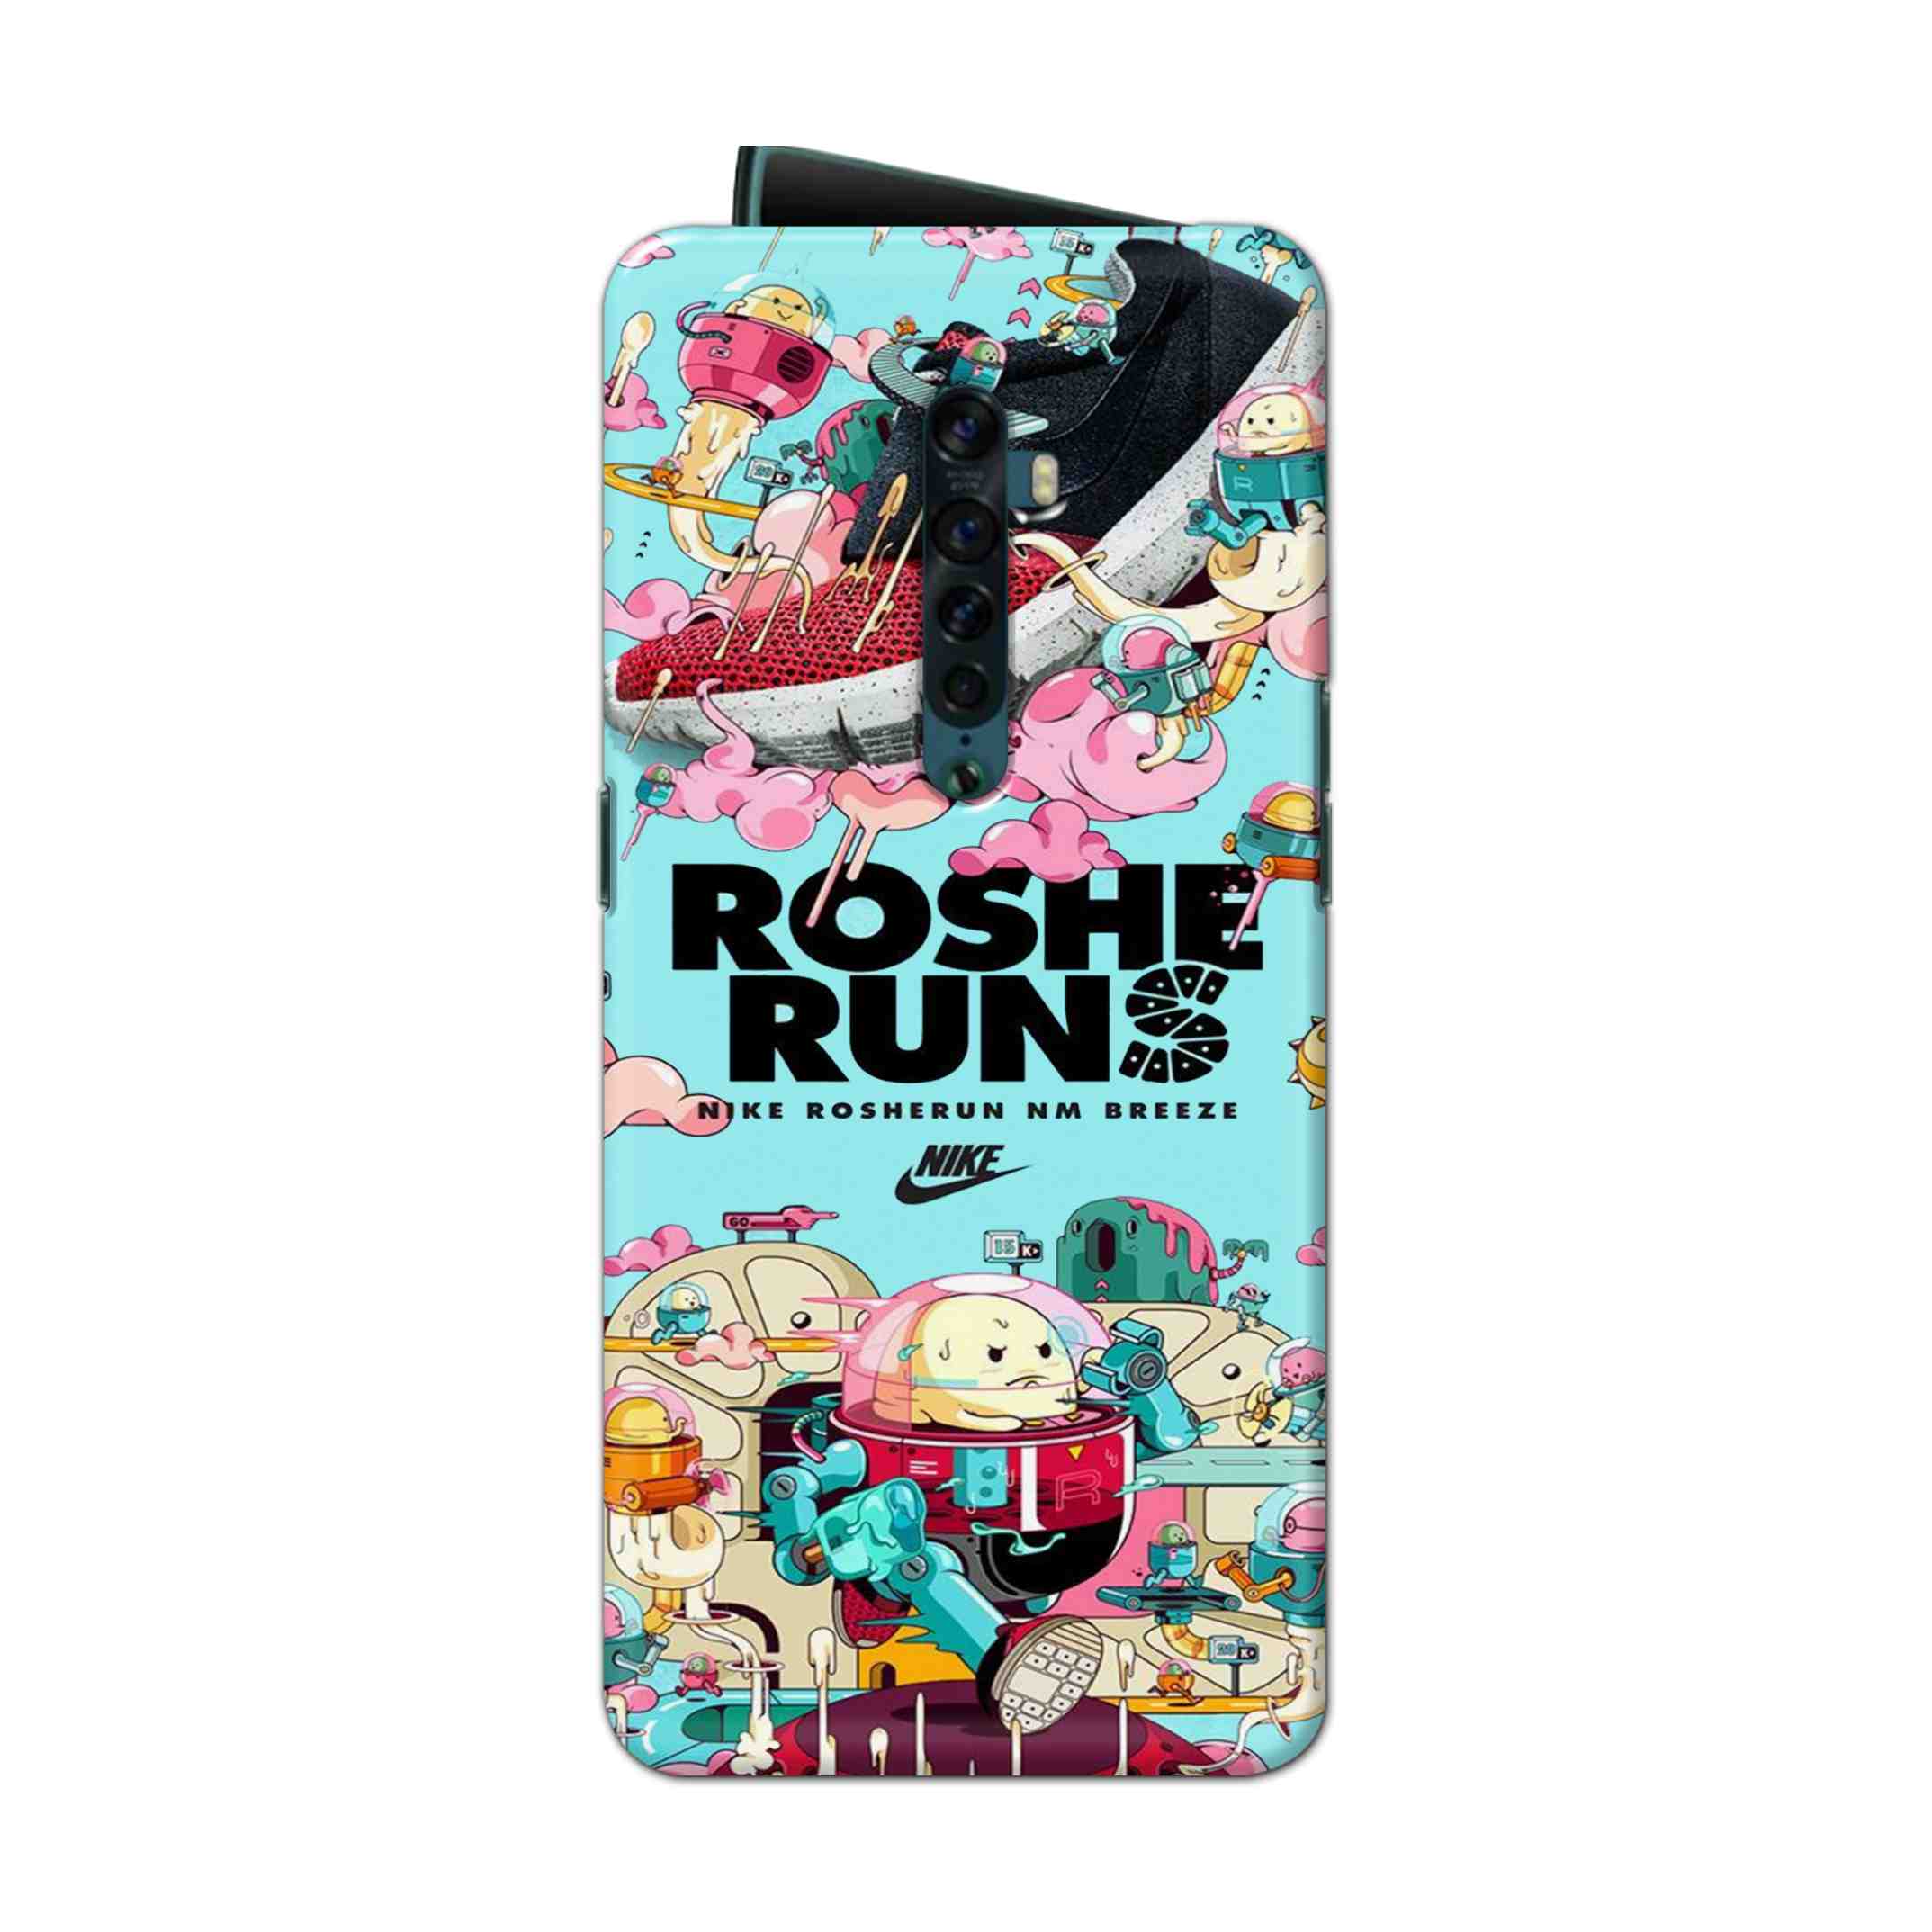 Buy Roshe Runs Hard Back Mobile Phone Case Cover For Oppo Reno 2 Online